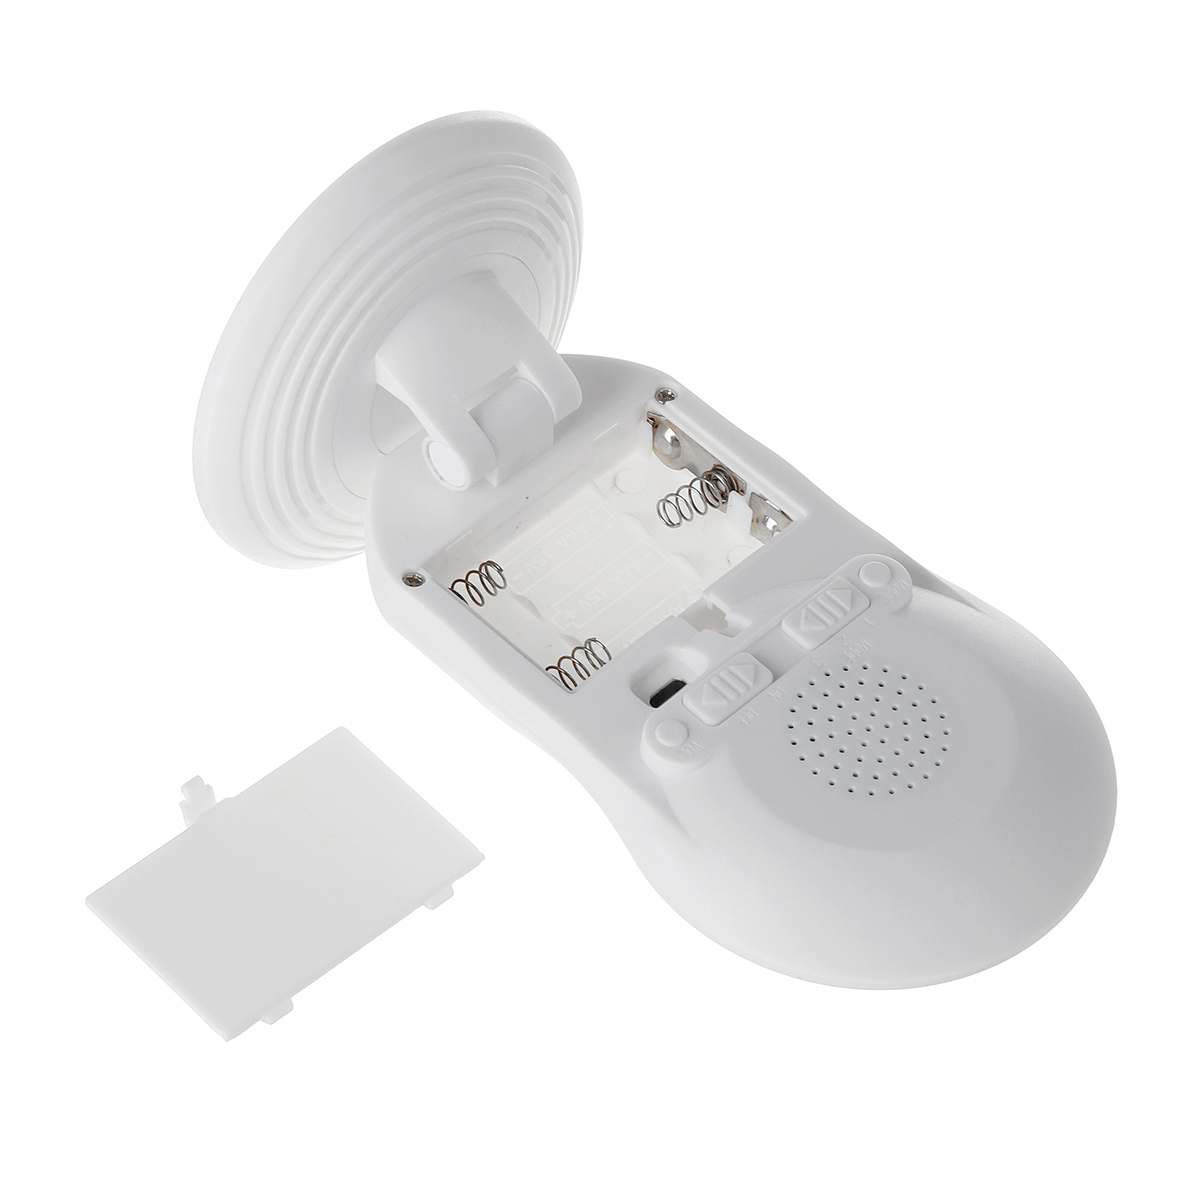 Wireless-Door-Bell-Alarm-System-Doorbell-Welcome-Intelligent-Infrared-Sensing-1546268-9